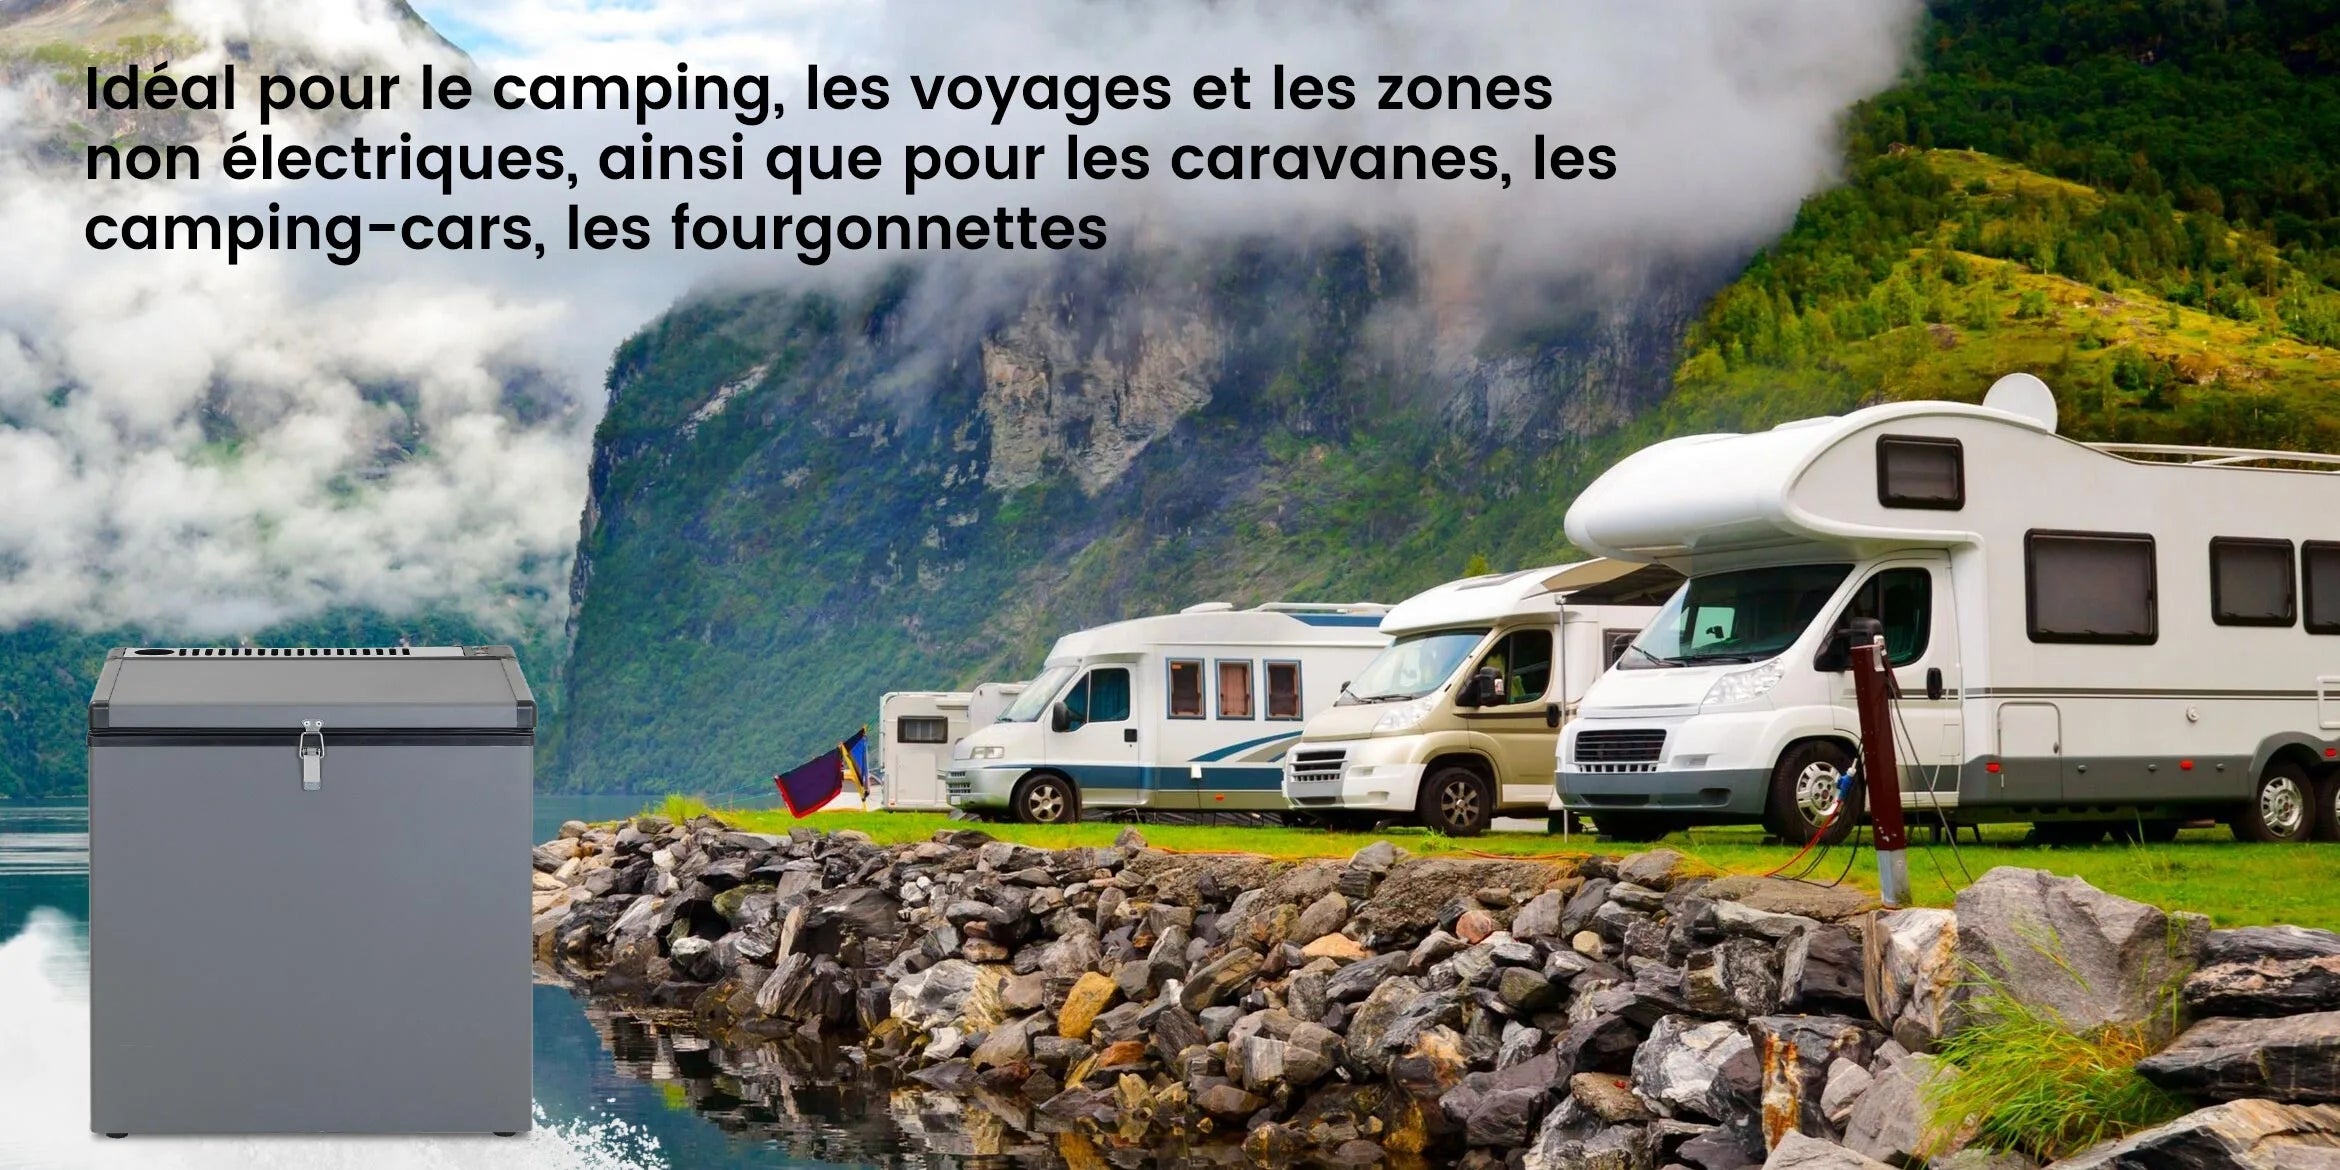 DSG-70B1E Idéal pour le camping, les voyages et les zones non électriques, ainsi que pour les caravanes, les camping-cars, les fourgonnettes